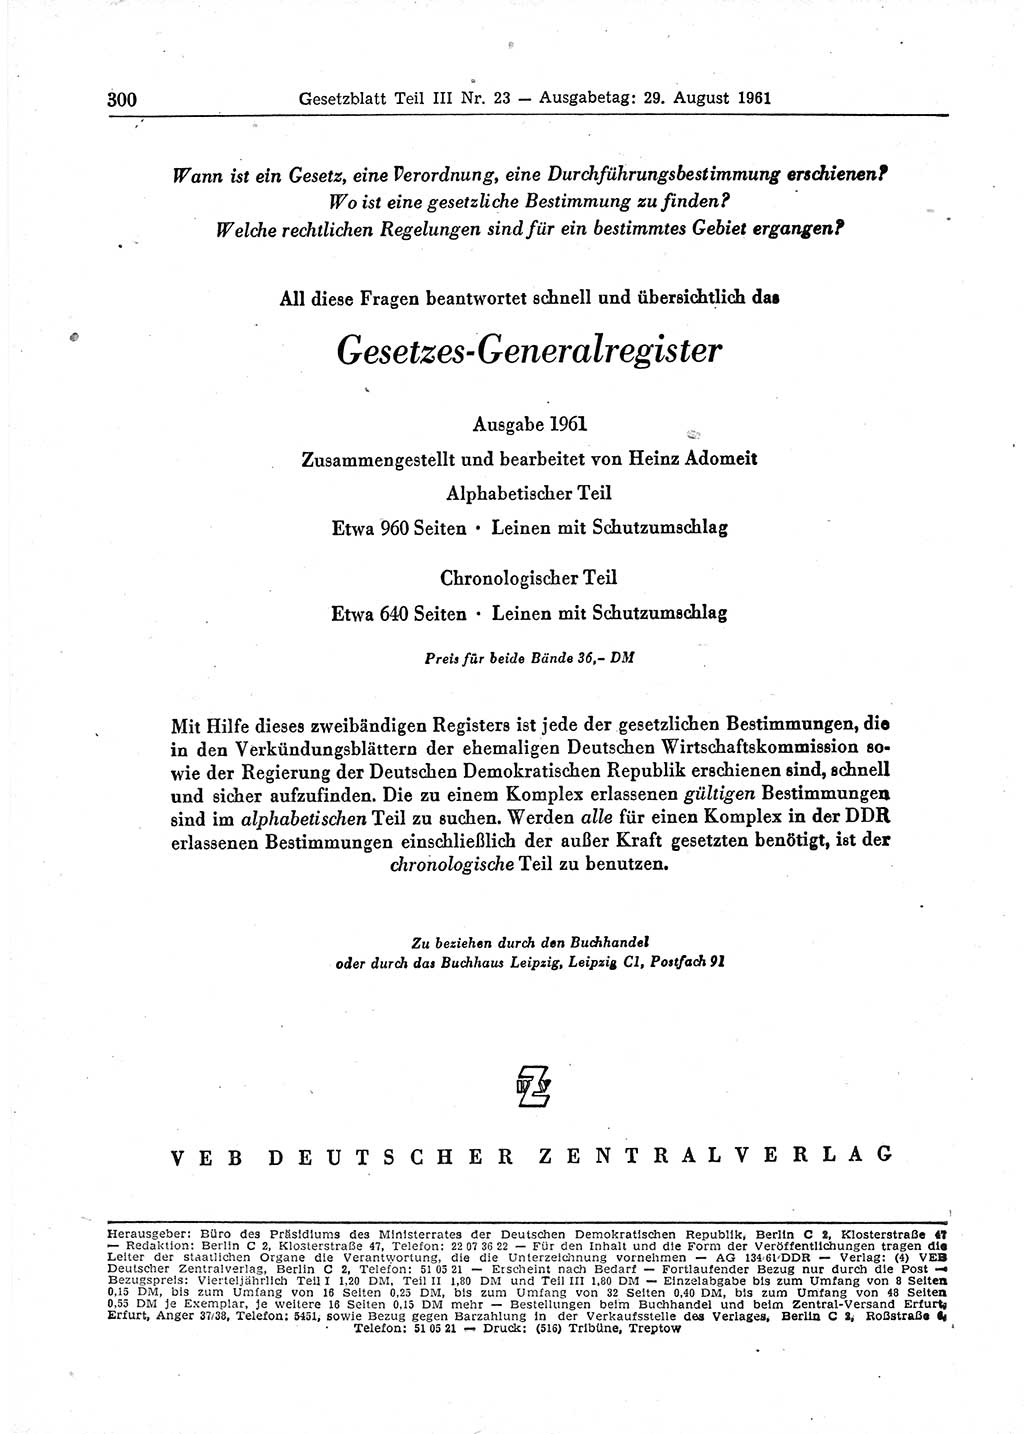 Gesetzblatt (GBl.) der Deutschen Demokratischen Republik (DDR) Teil ⅠⅠⅠ 1961, Seite 300 (GBl. DDR ⅠⅠⅠ 1961, S. 300)